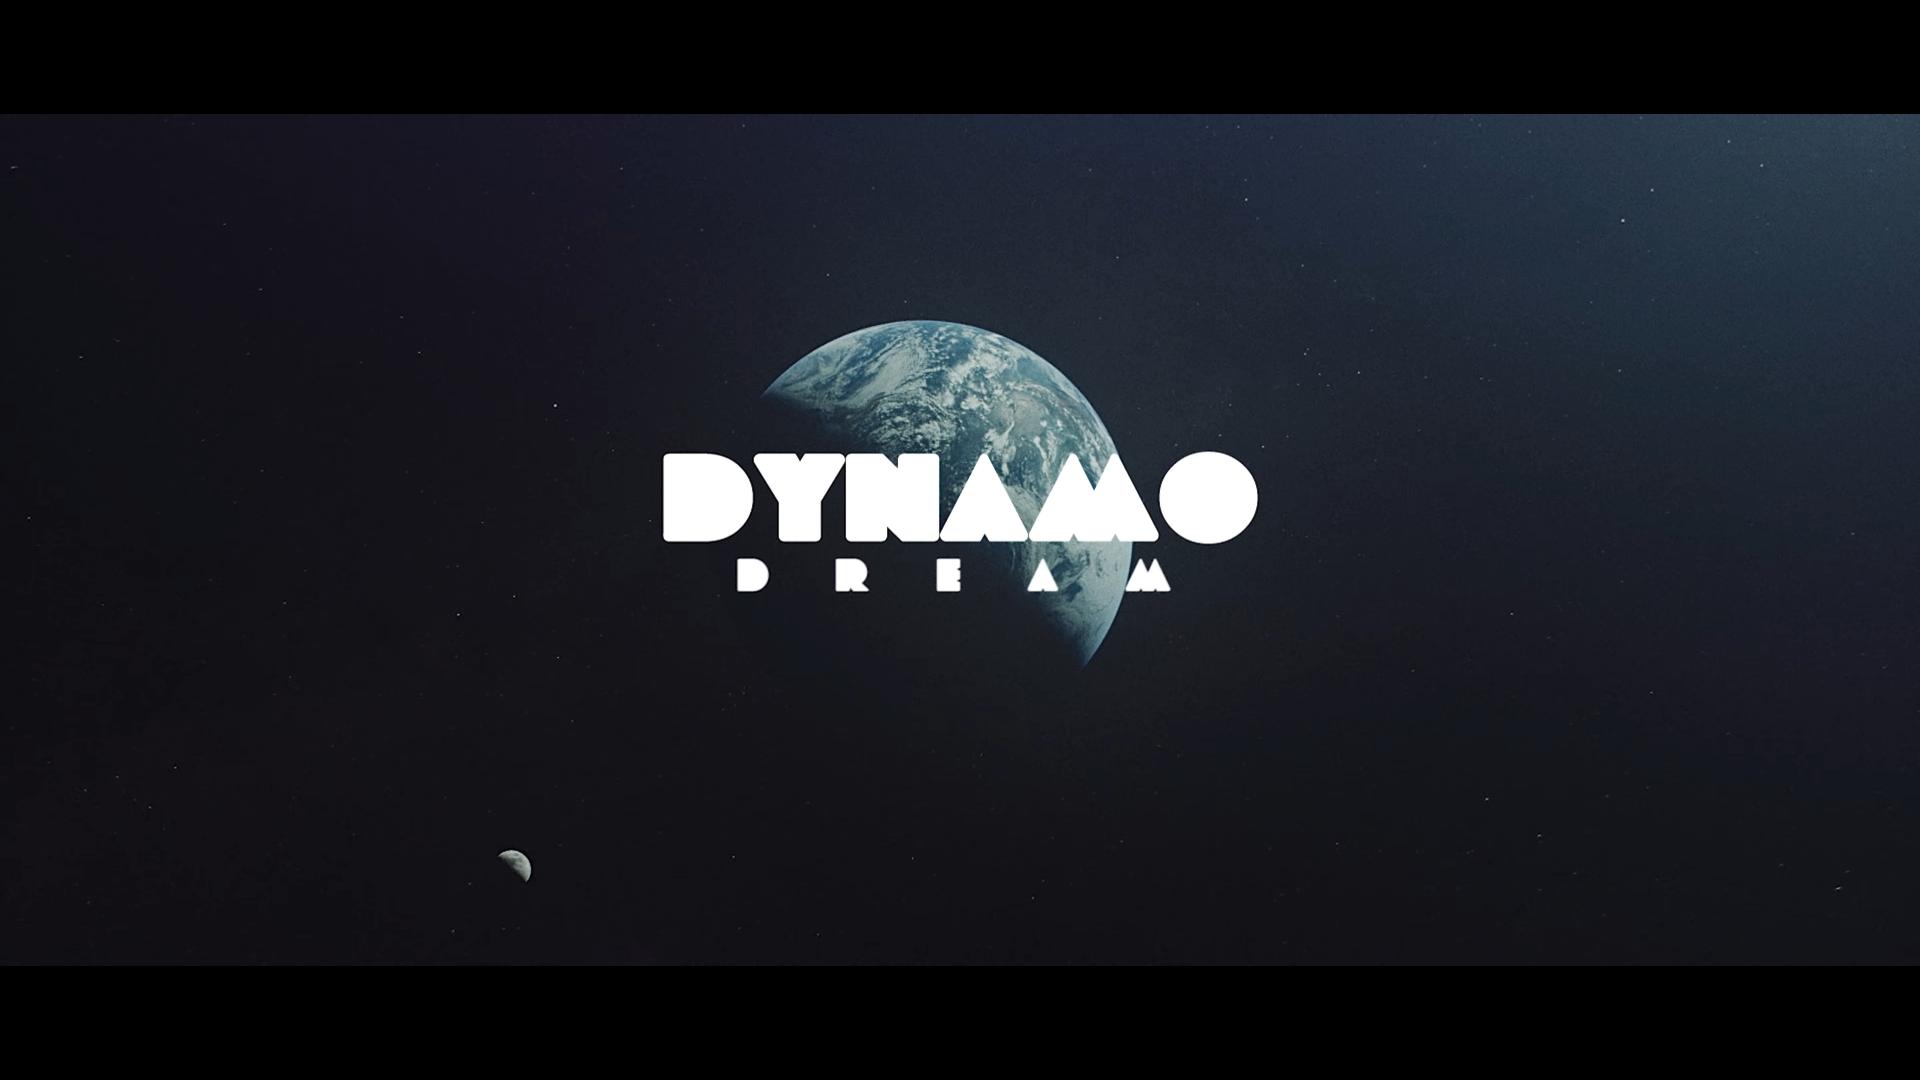 Dynamo Dream (2021)